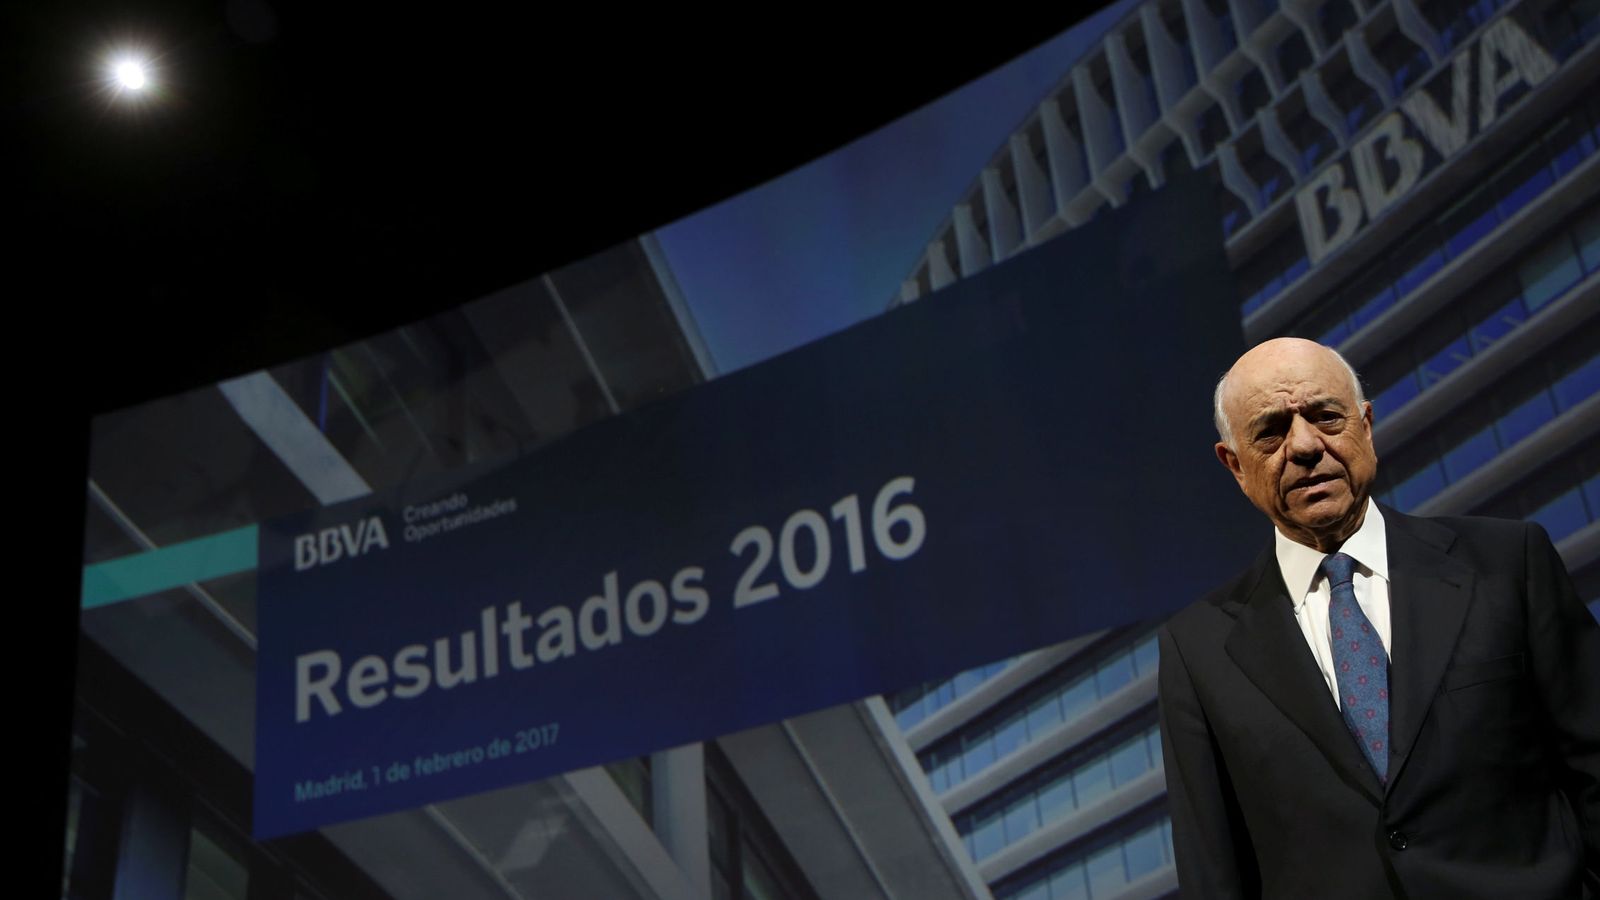 Foto: Francisco González, presidente de BBVA, en la presentación de los resultados de 2016. (Reuters)